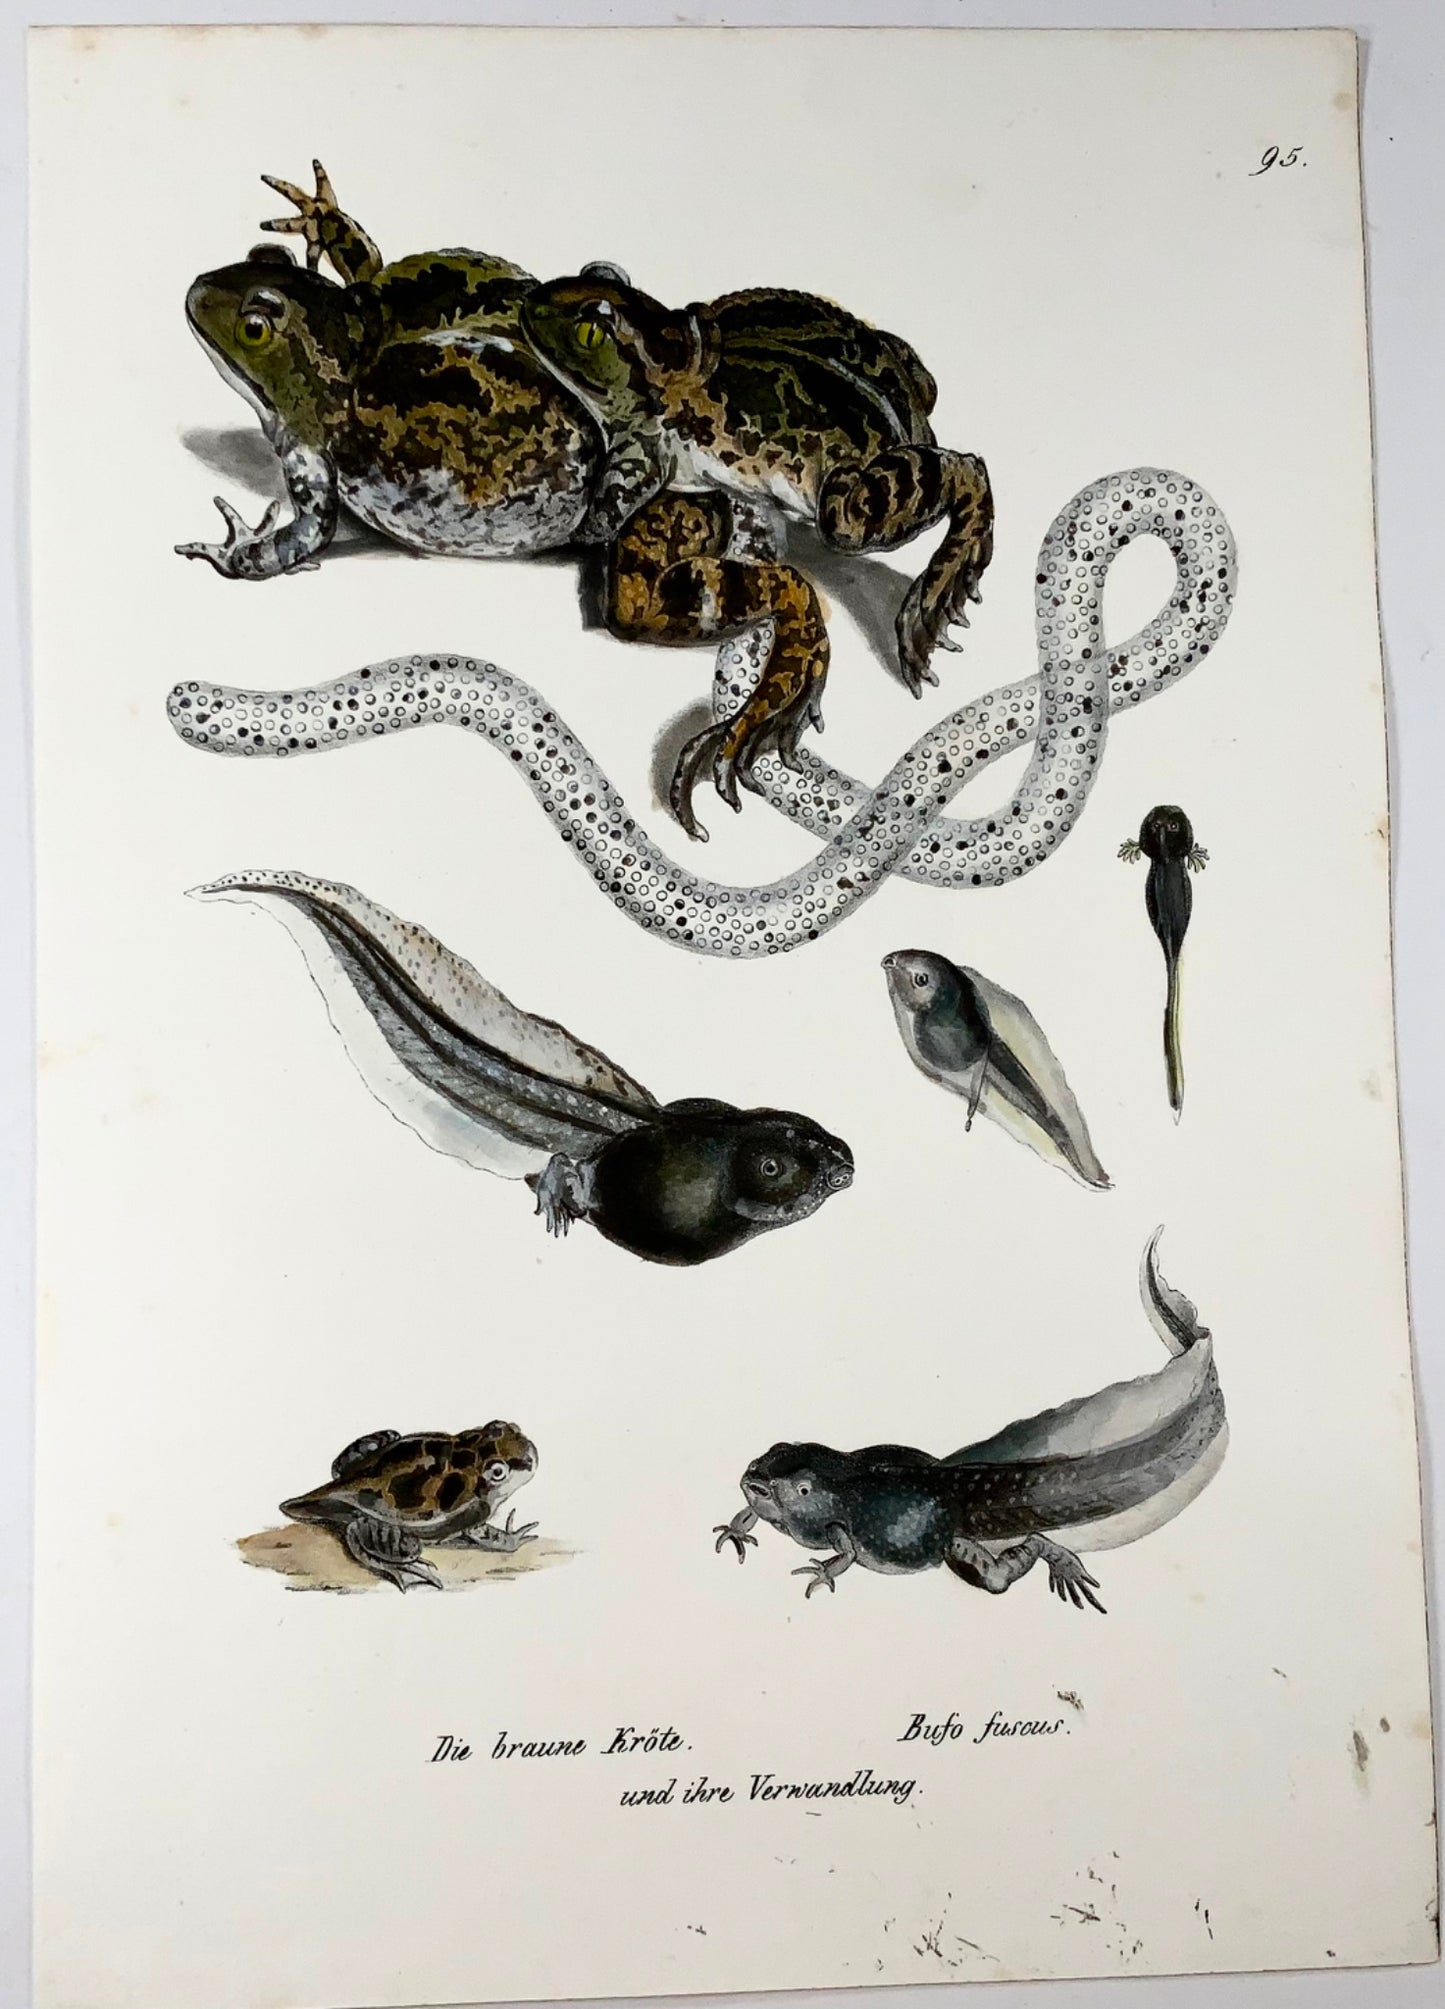 1833 Rospo, girini, anfibi, Schinz, litografia colorata a mano